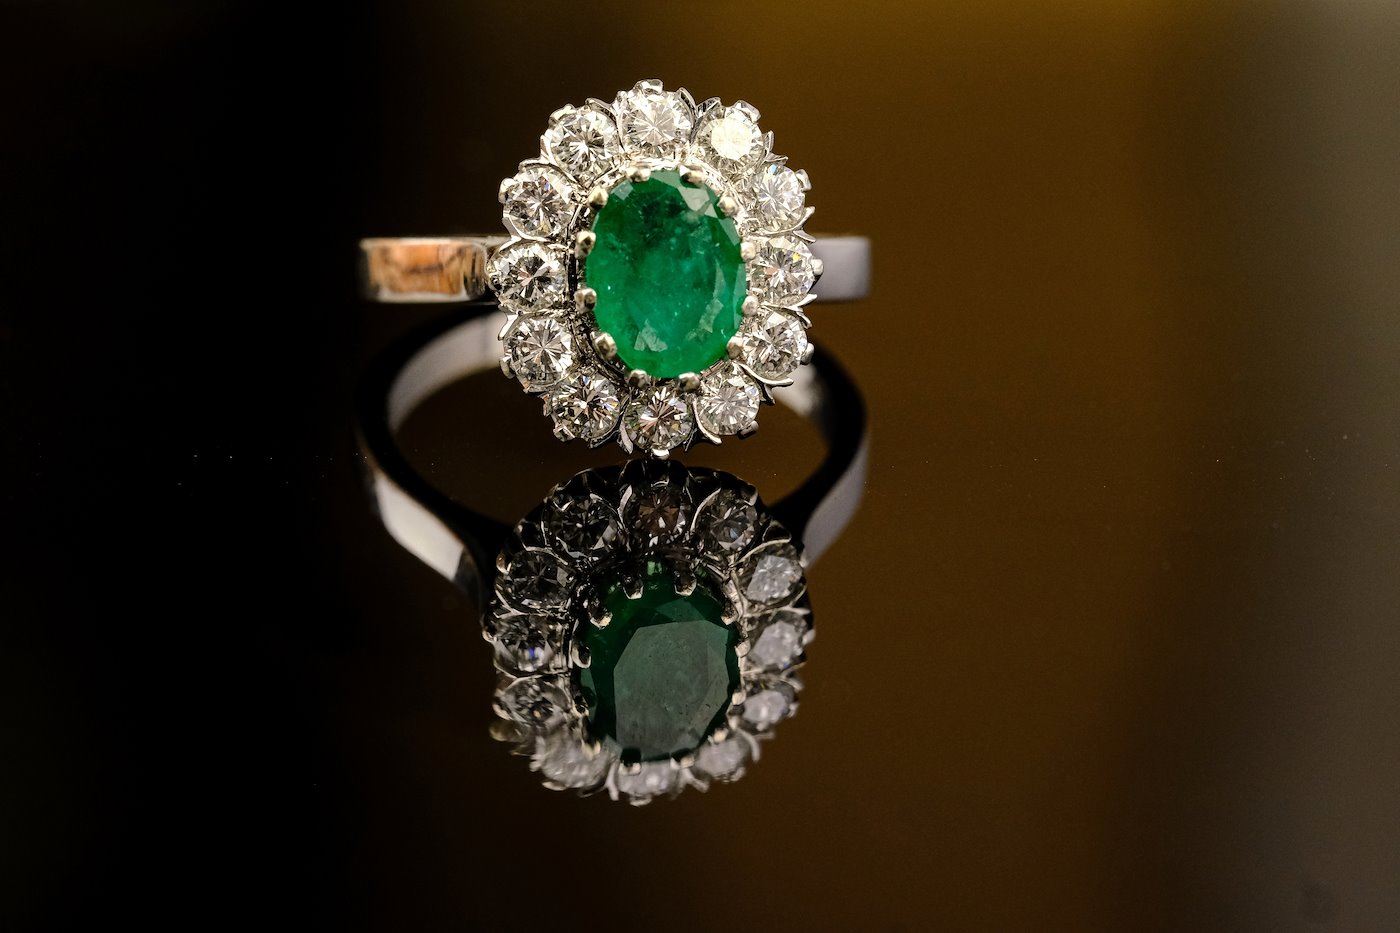 .. - Luxusní prsten s diamanty a smaragdem, zlato 585/1000, značeno platnou puncovní značkou "labuť", hrubá hmotnost 4,90 g